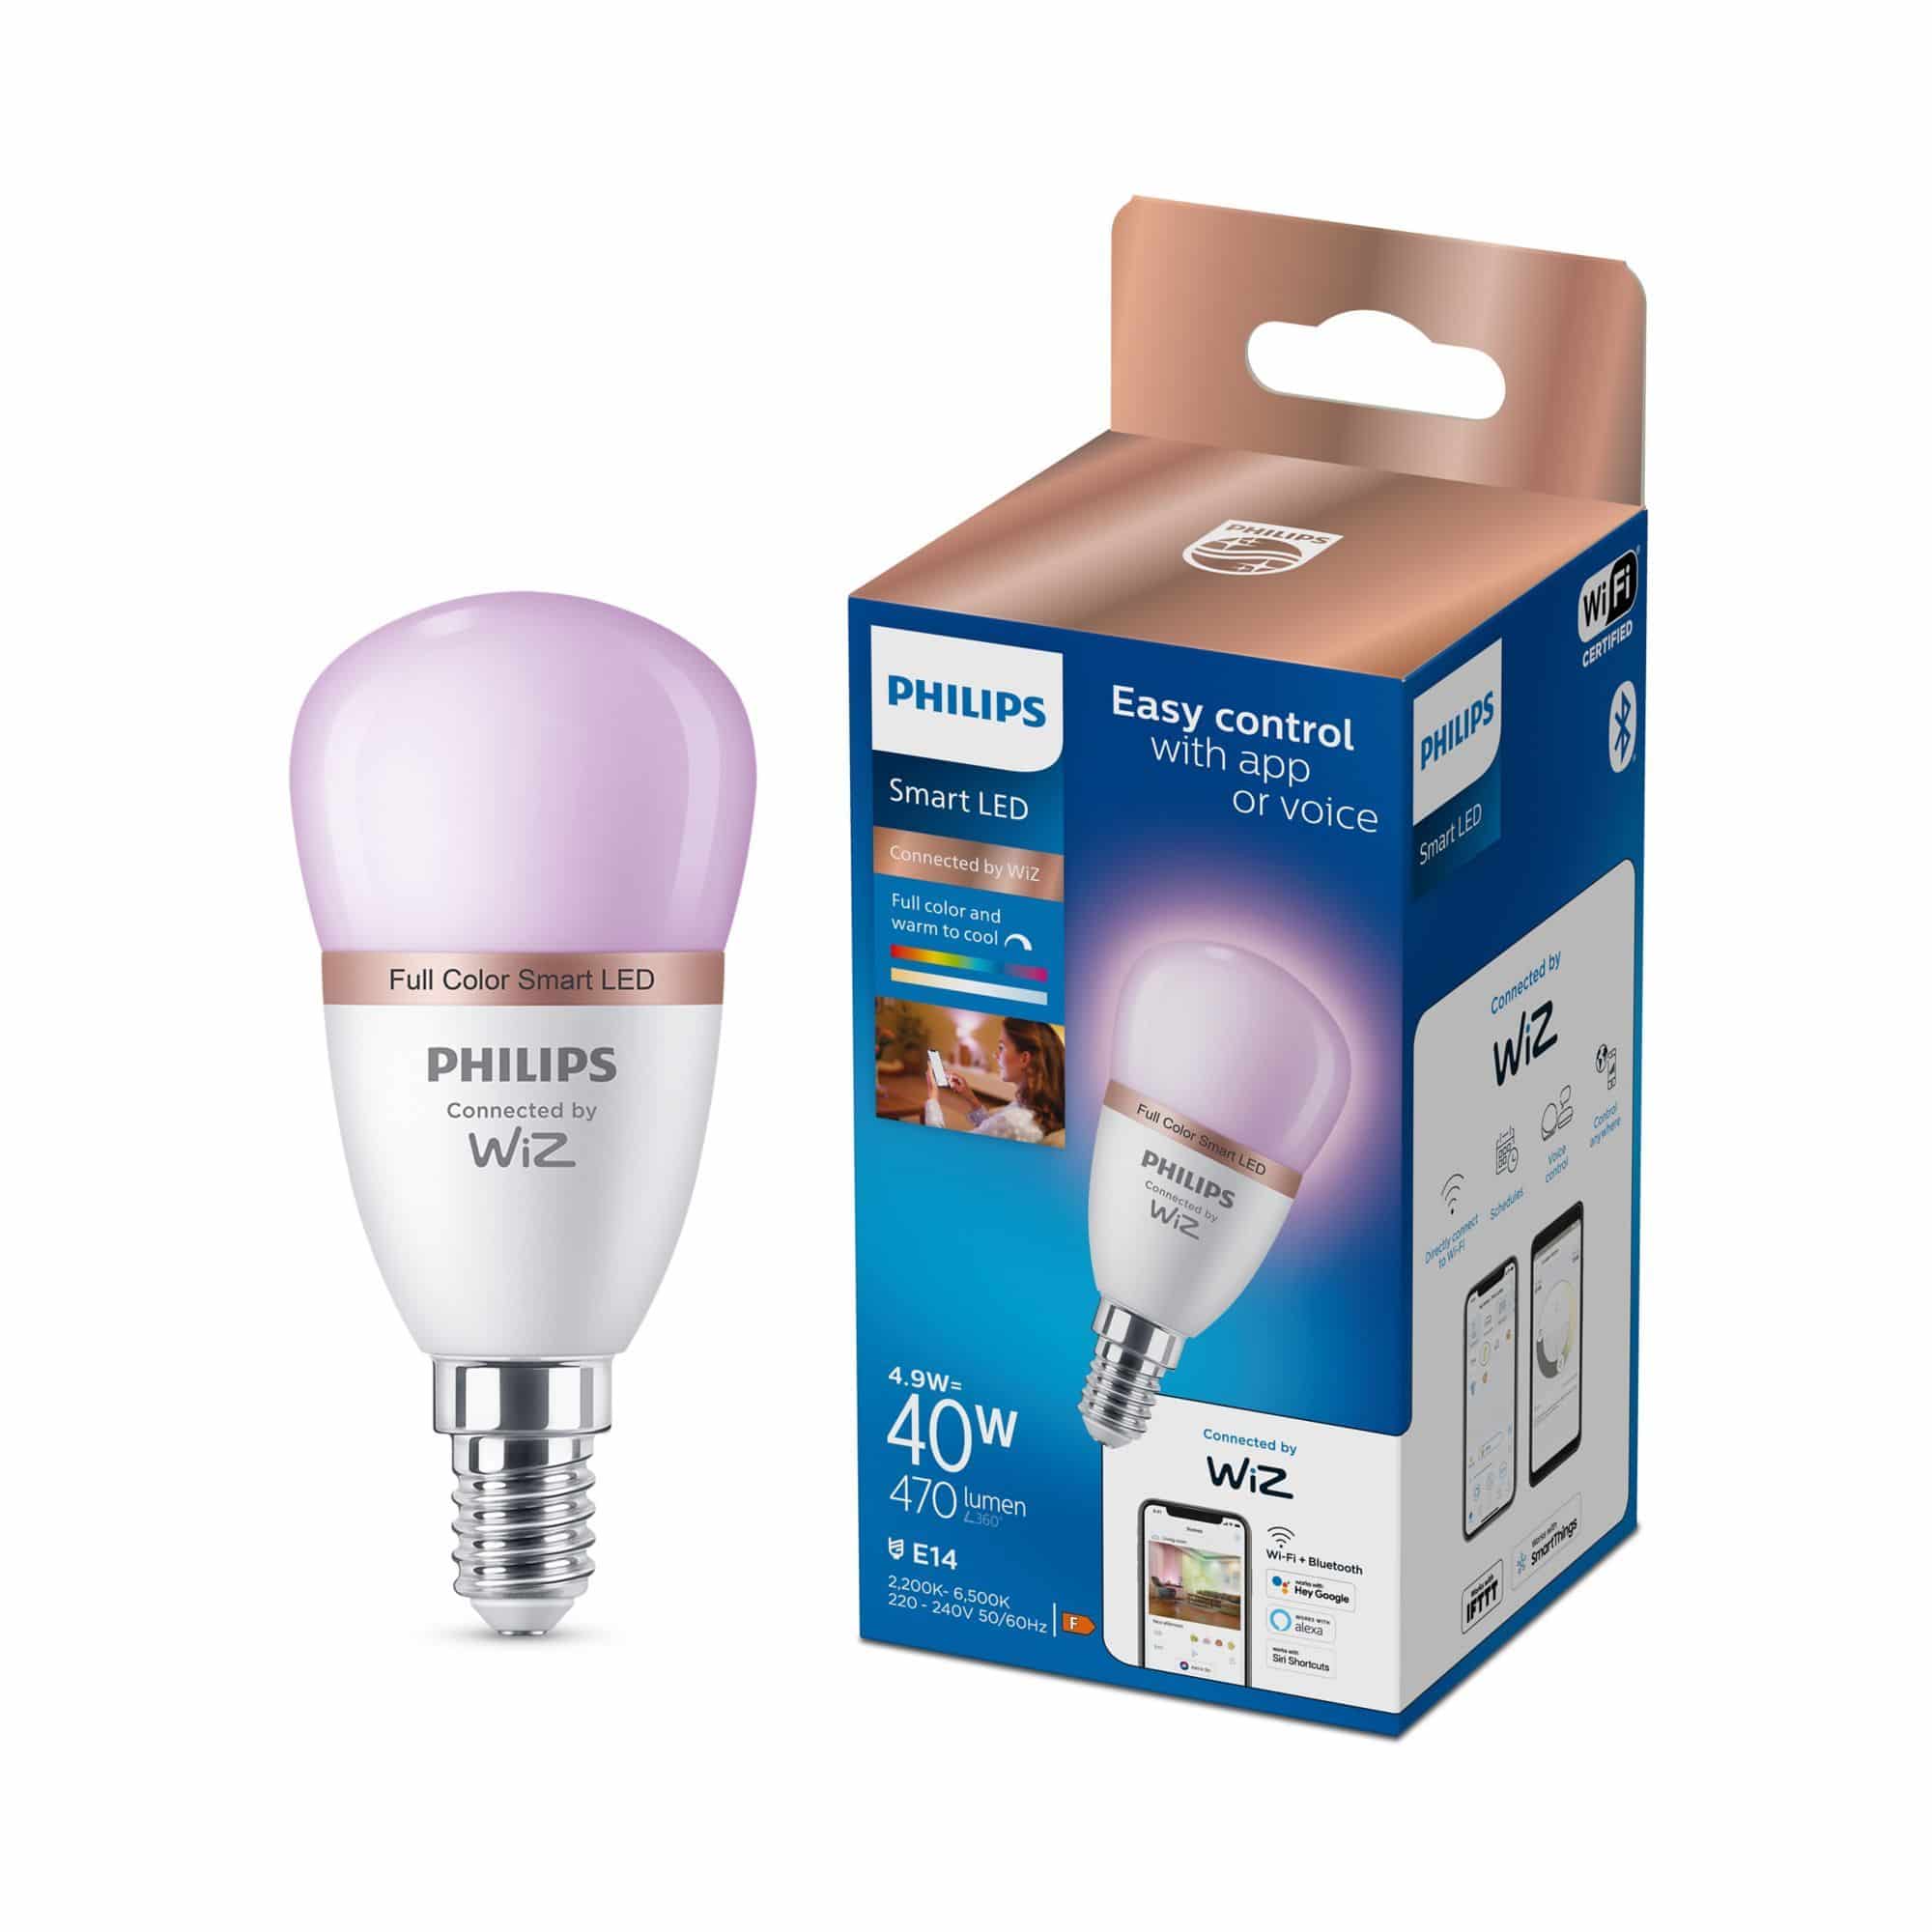 Philips (entspr. Signify von W E14 Lampe expert 40 W) by 4,9 P45 Technomarkt